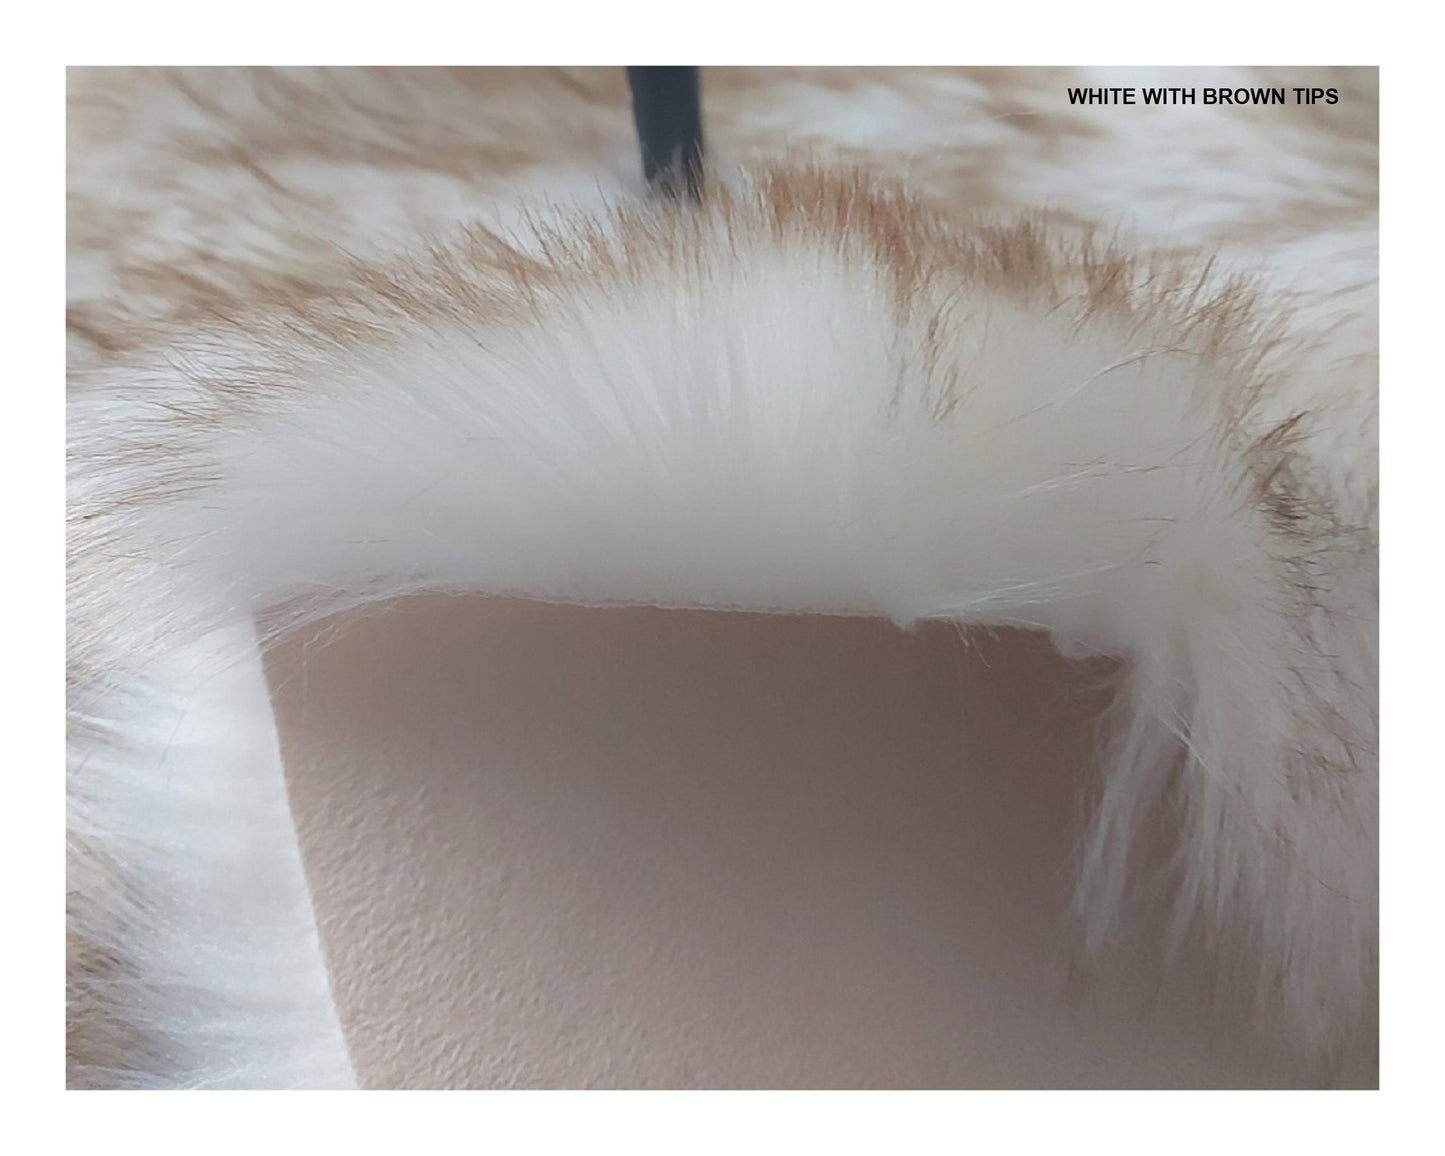 Faux sheepskin rug Oval Shaped 5'25''X8' (160cm x 240cm)